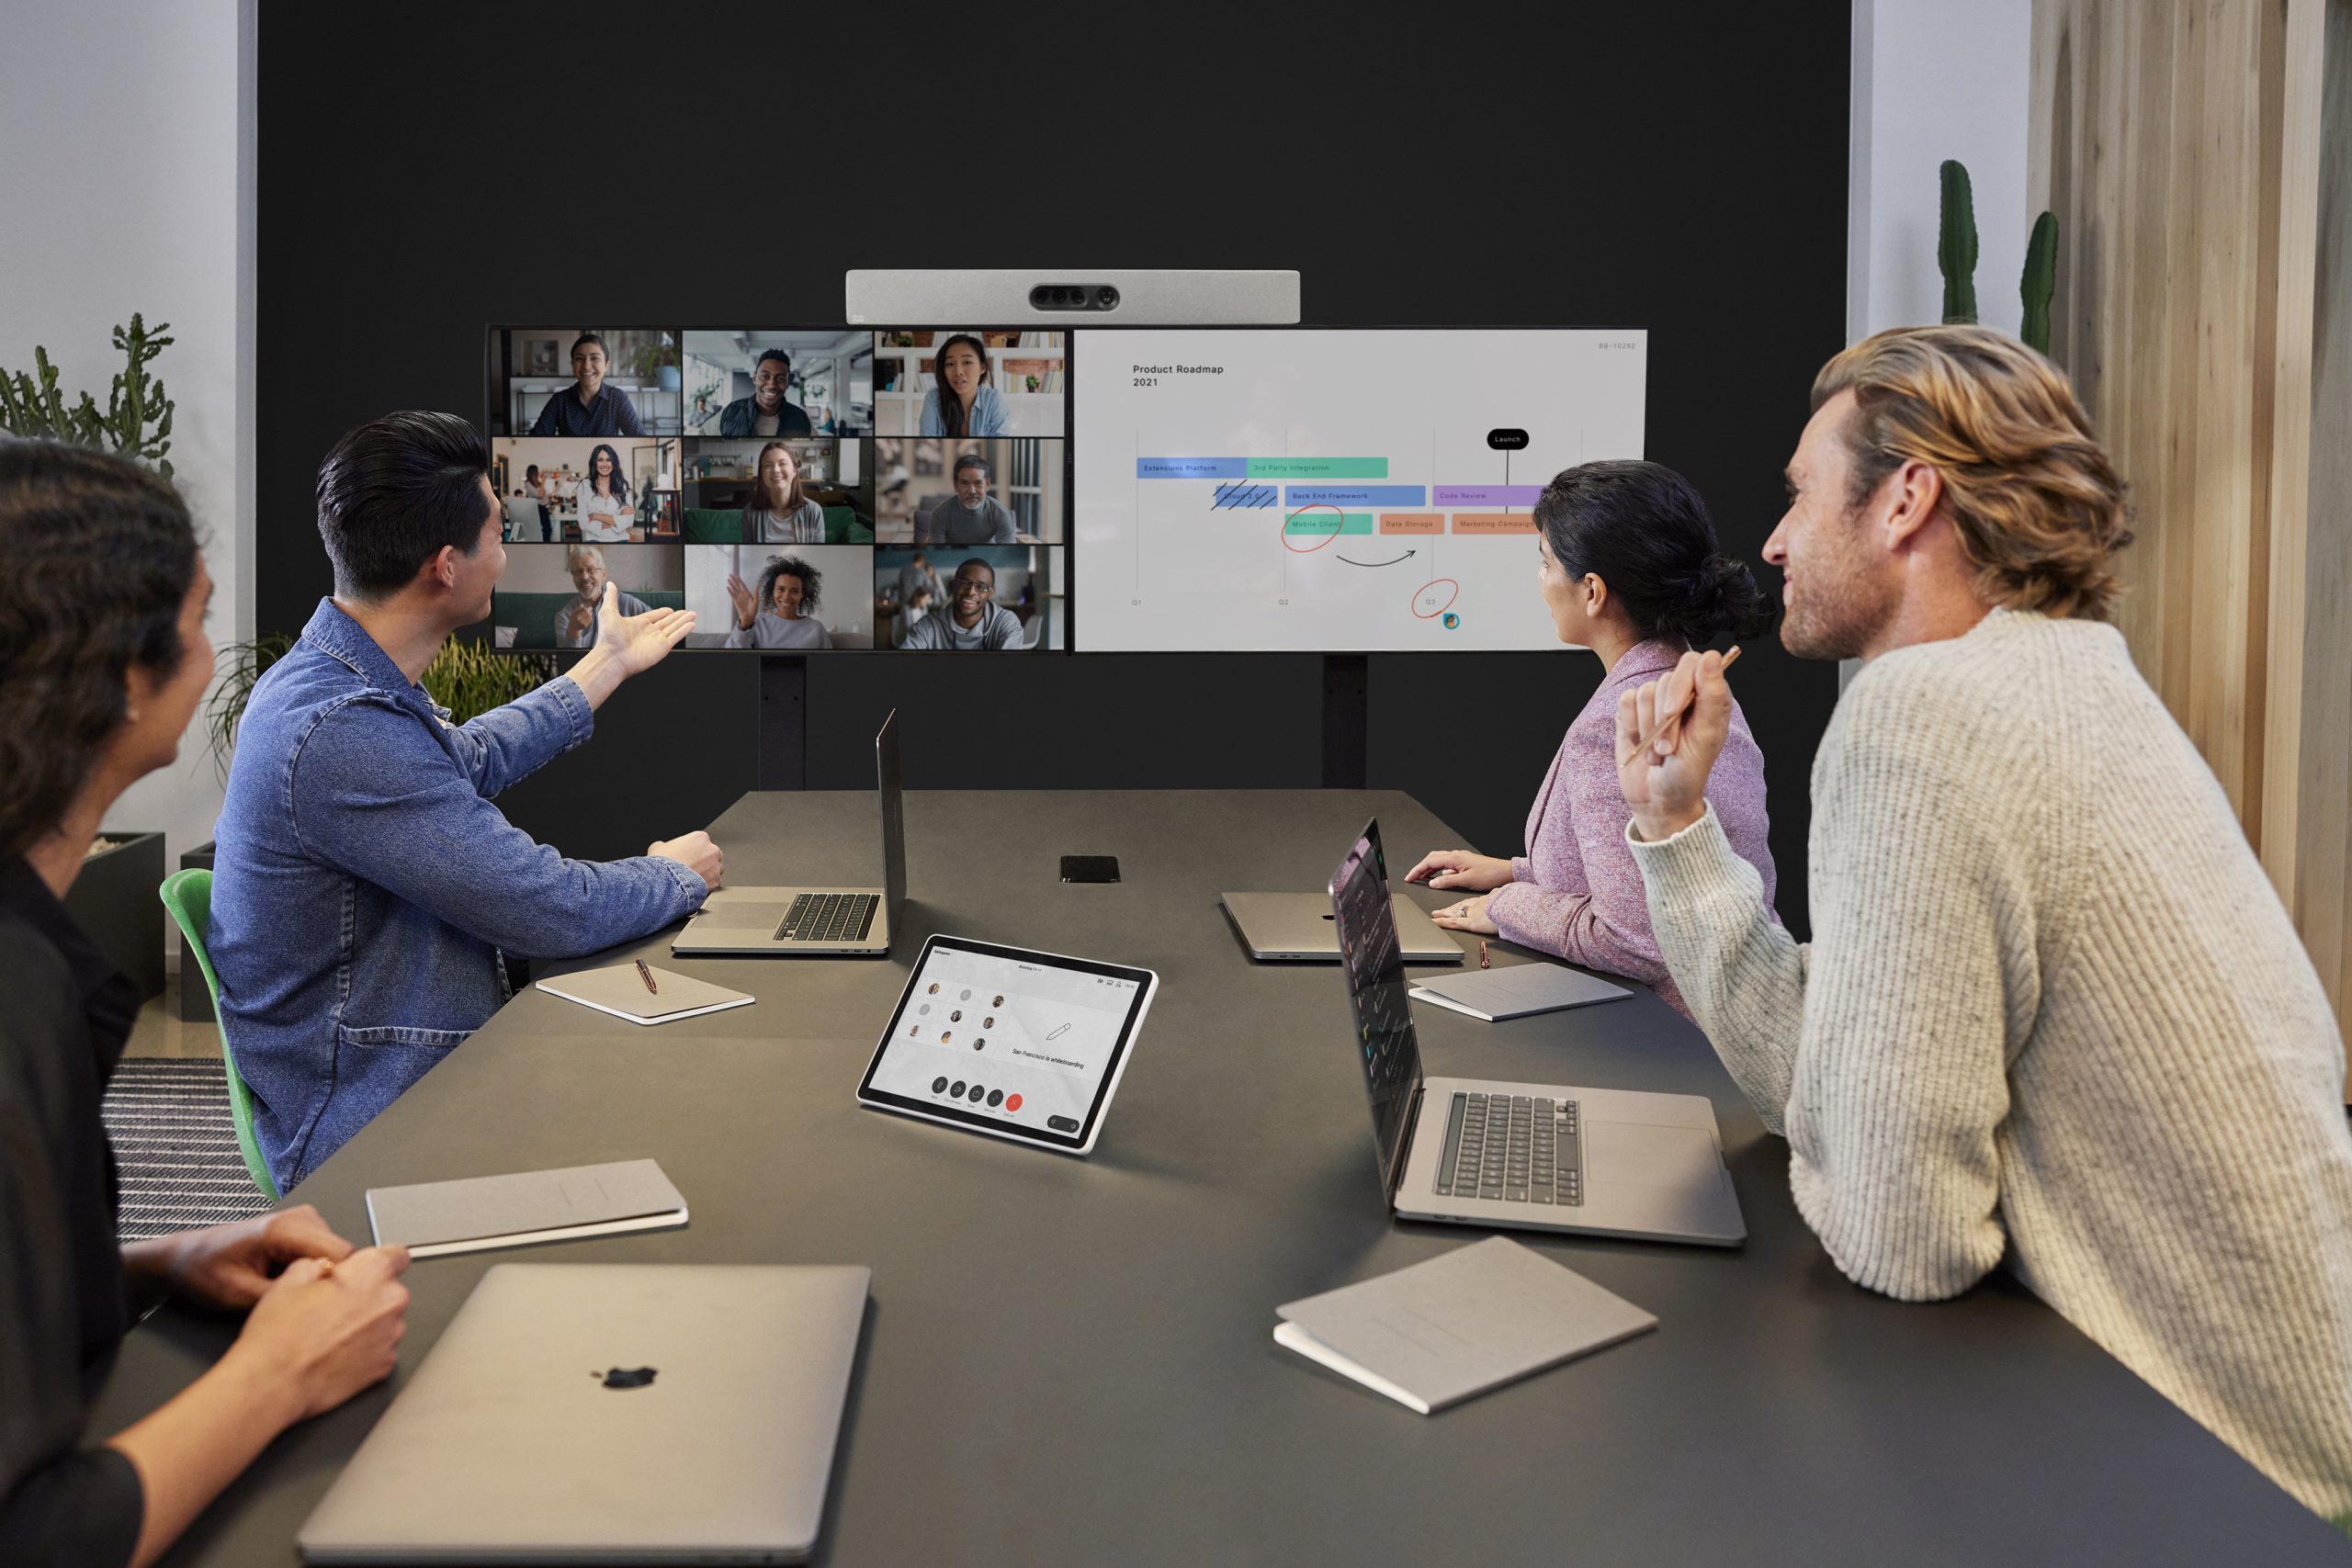 图片展示了几位专业人士在现代办公室进行视频会议，他们正专注地看着屏幕并讨论事宜。